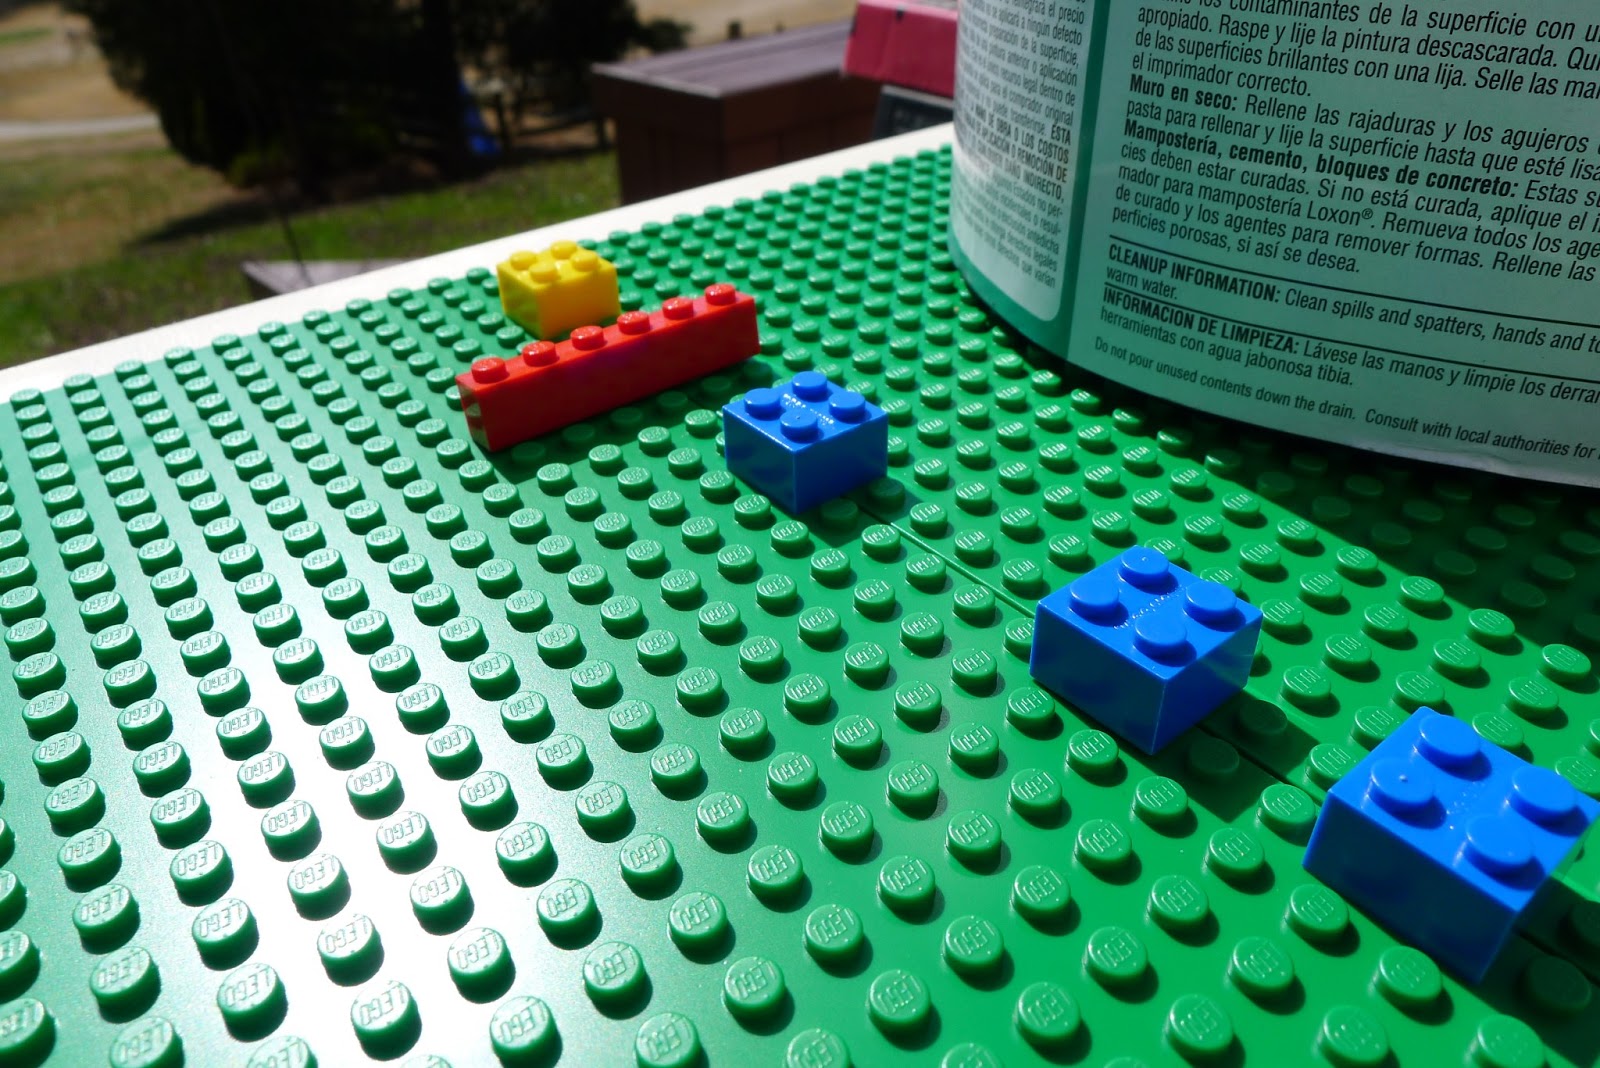 Easy DIY Lego Tables Ikea Hack! Lego Desk Tutorial - Must Have Mom